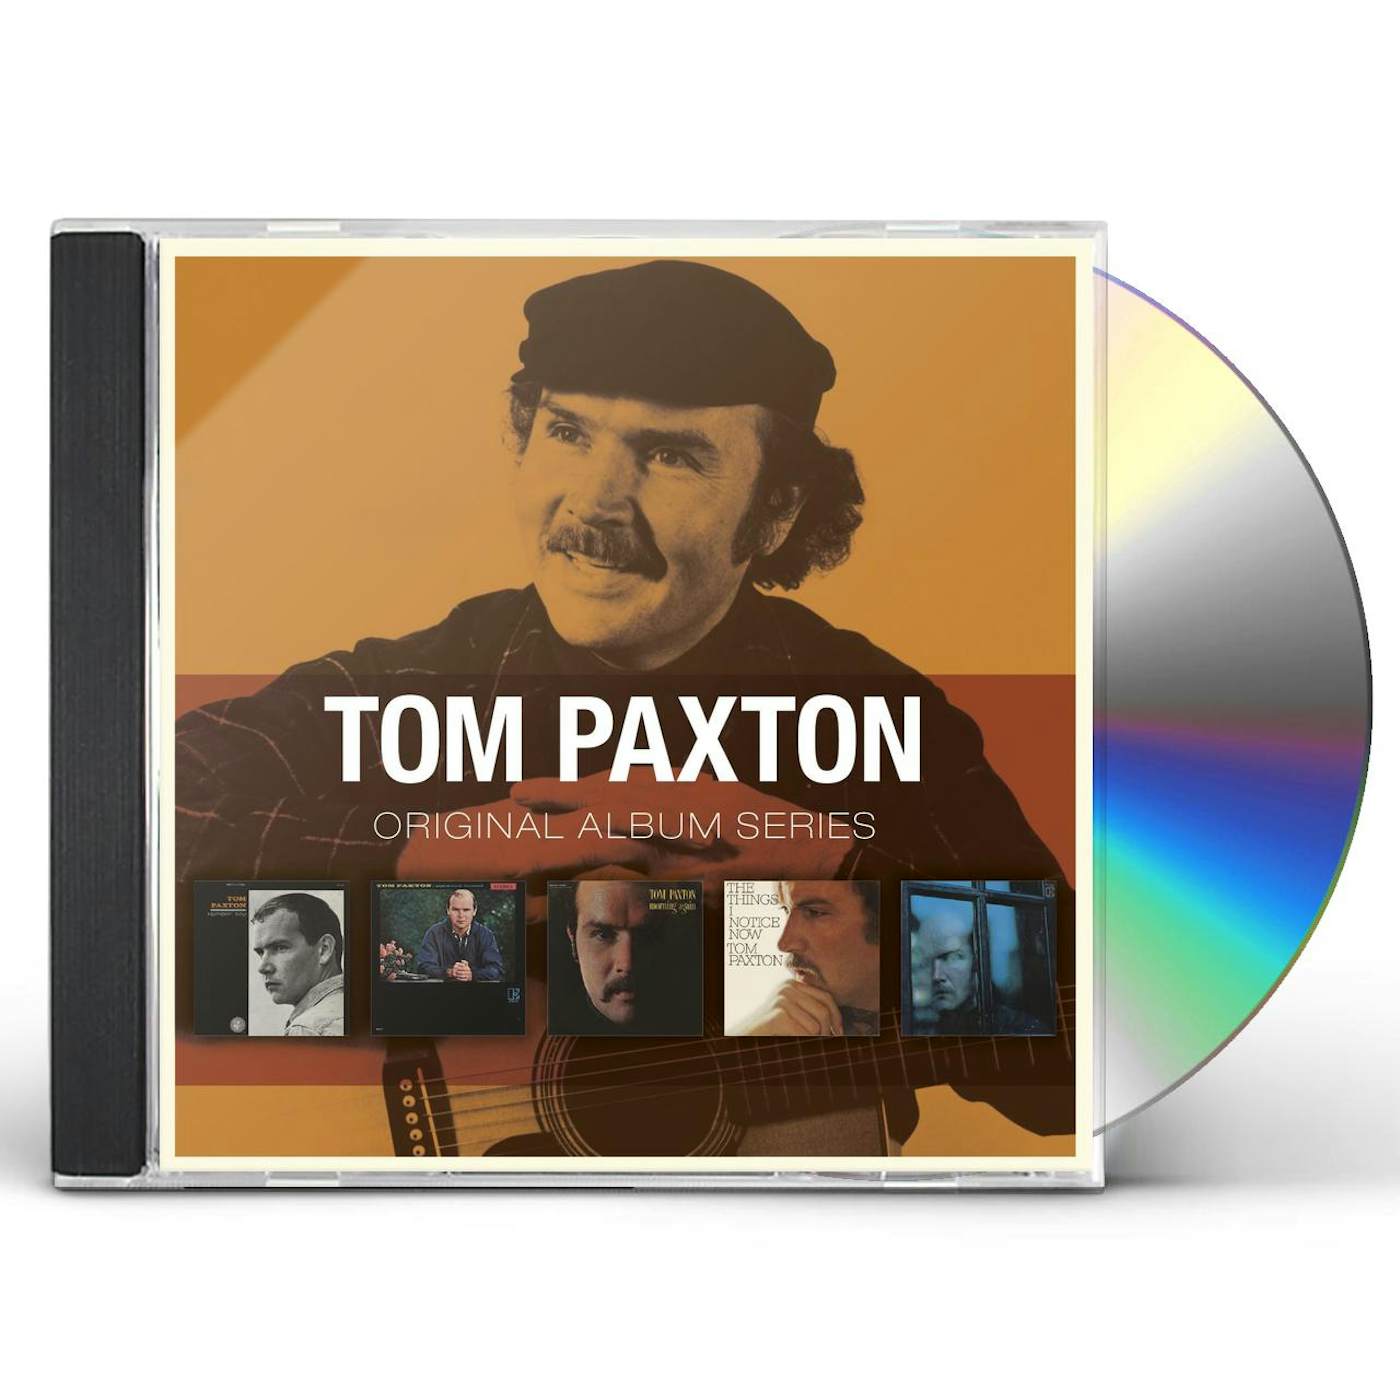 Tom Paxton ORIGINAL ALBUM SERIES CD